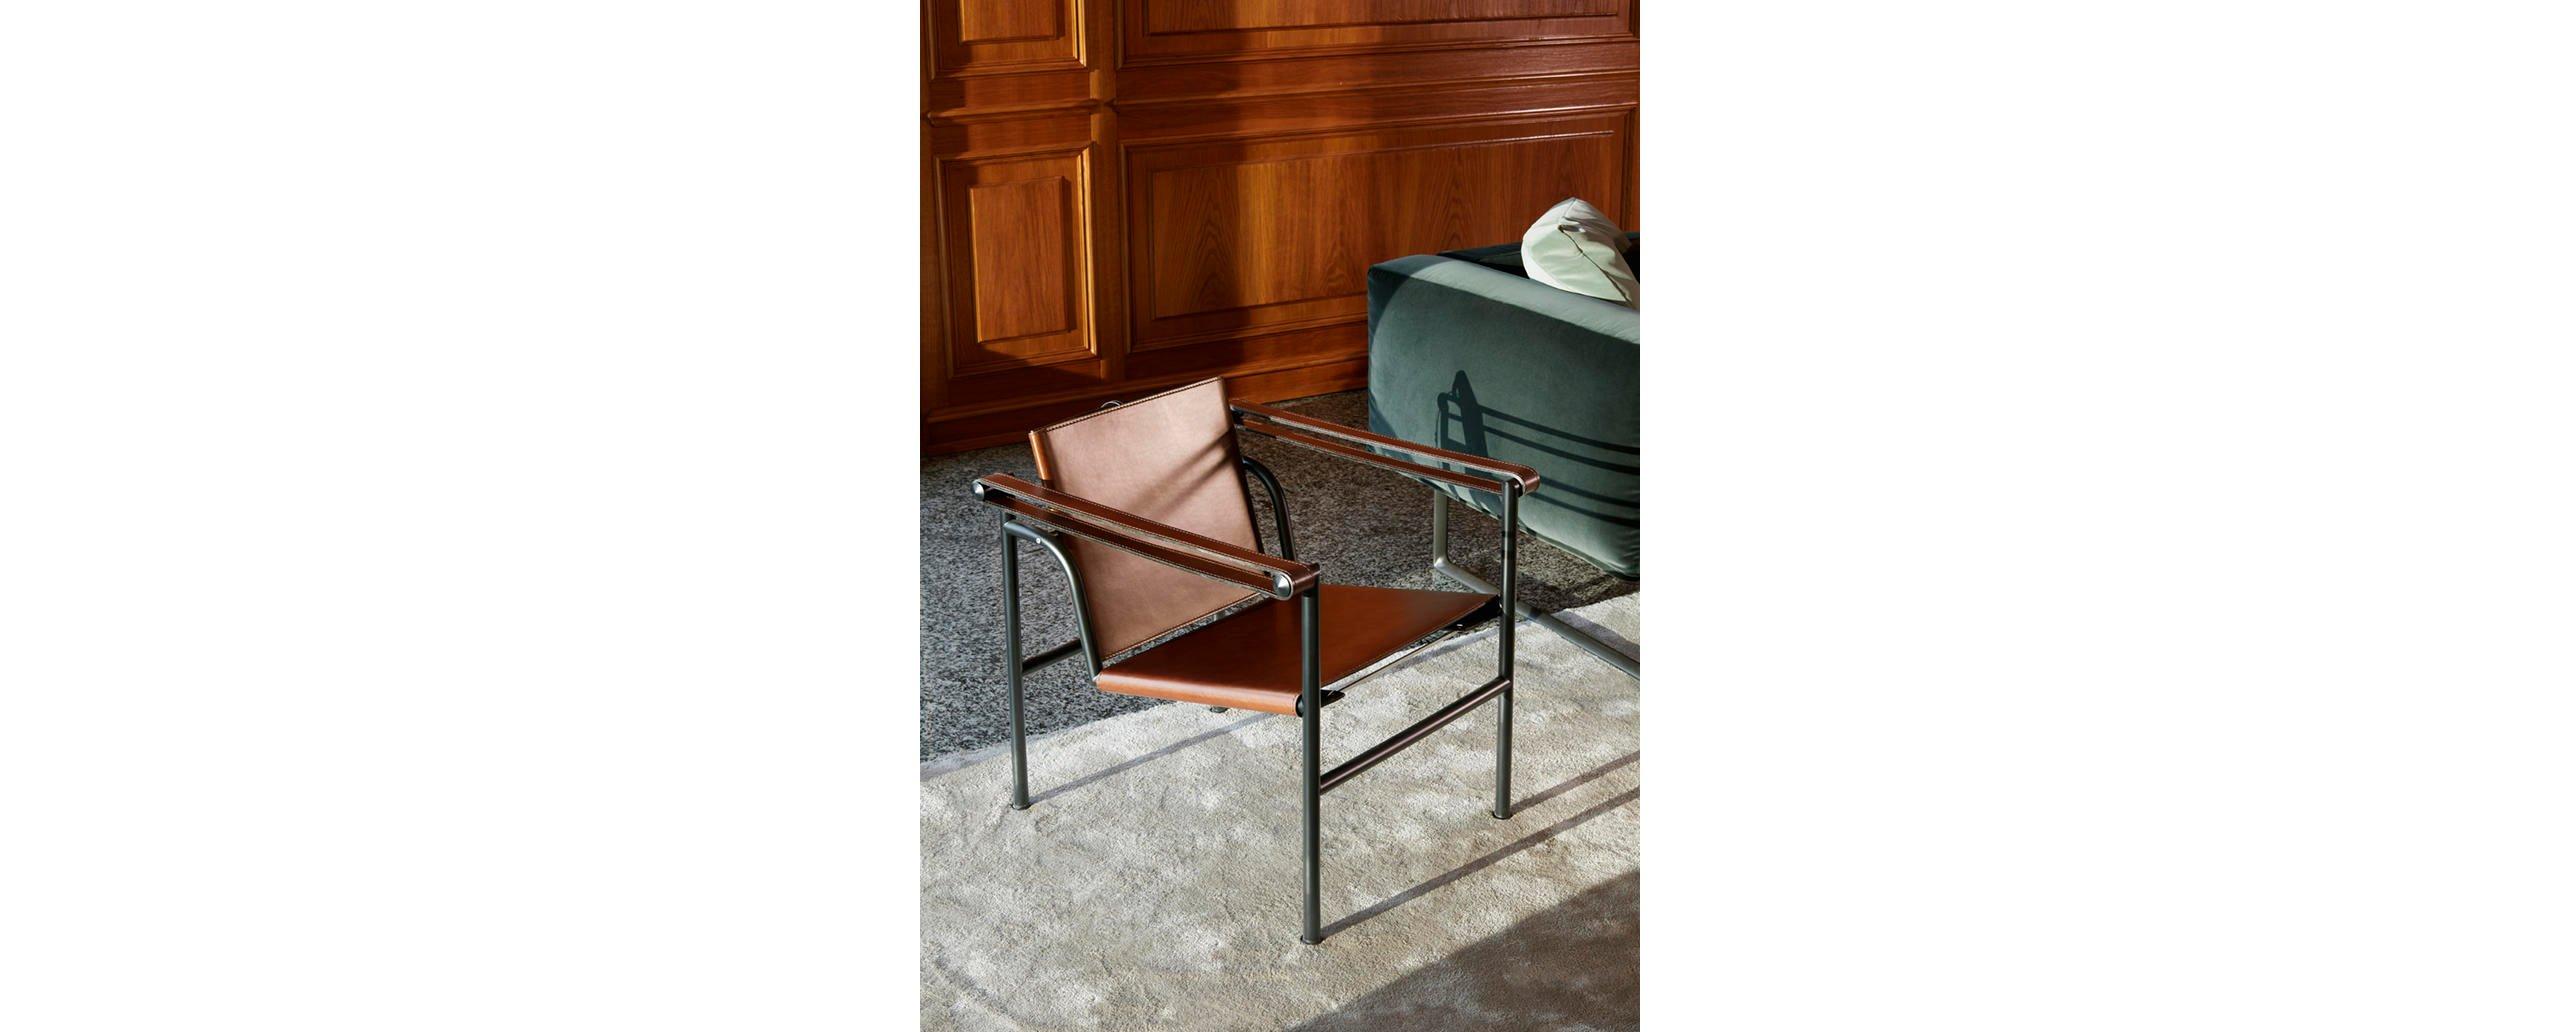 Chaise conçue par Le Corbusier, Pierre Jeanneret, Charlotte Perriand en 1928. Relancé en 1965.
Fabriqué par Cassina en Italie.

Une chaise légère et compacte conçue et présentée au Salon d'Automne de 1929 avec d'autres modèles importants, tels que